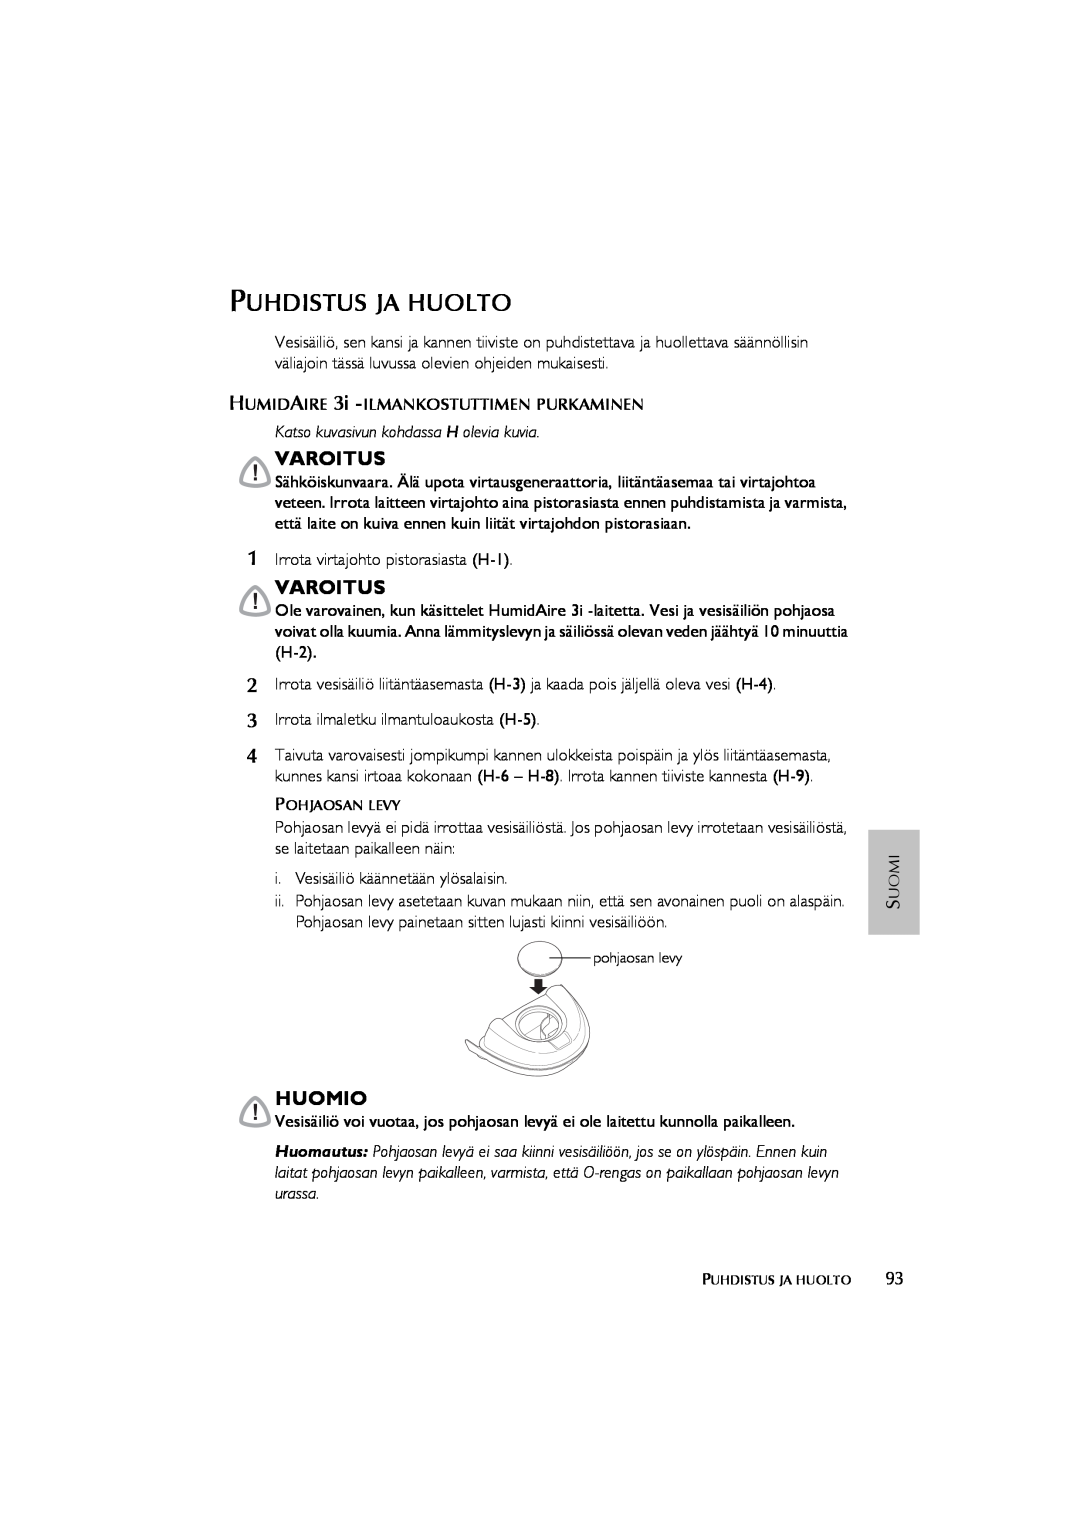 ResMed Humidifier user manual Puhdistus Ja Huolto, Katso kuvasivun kohdassa H olevia kuvia, Varoitus, Huomio 